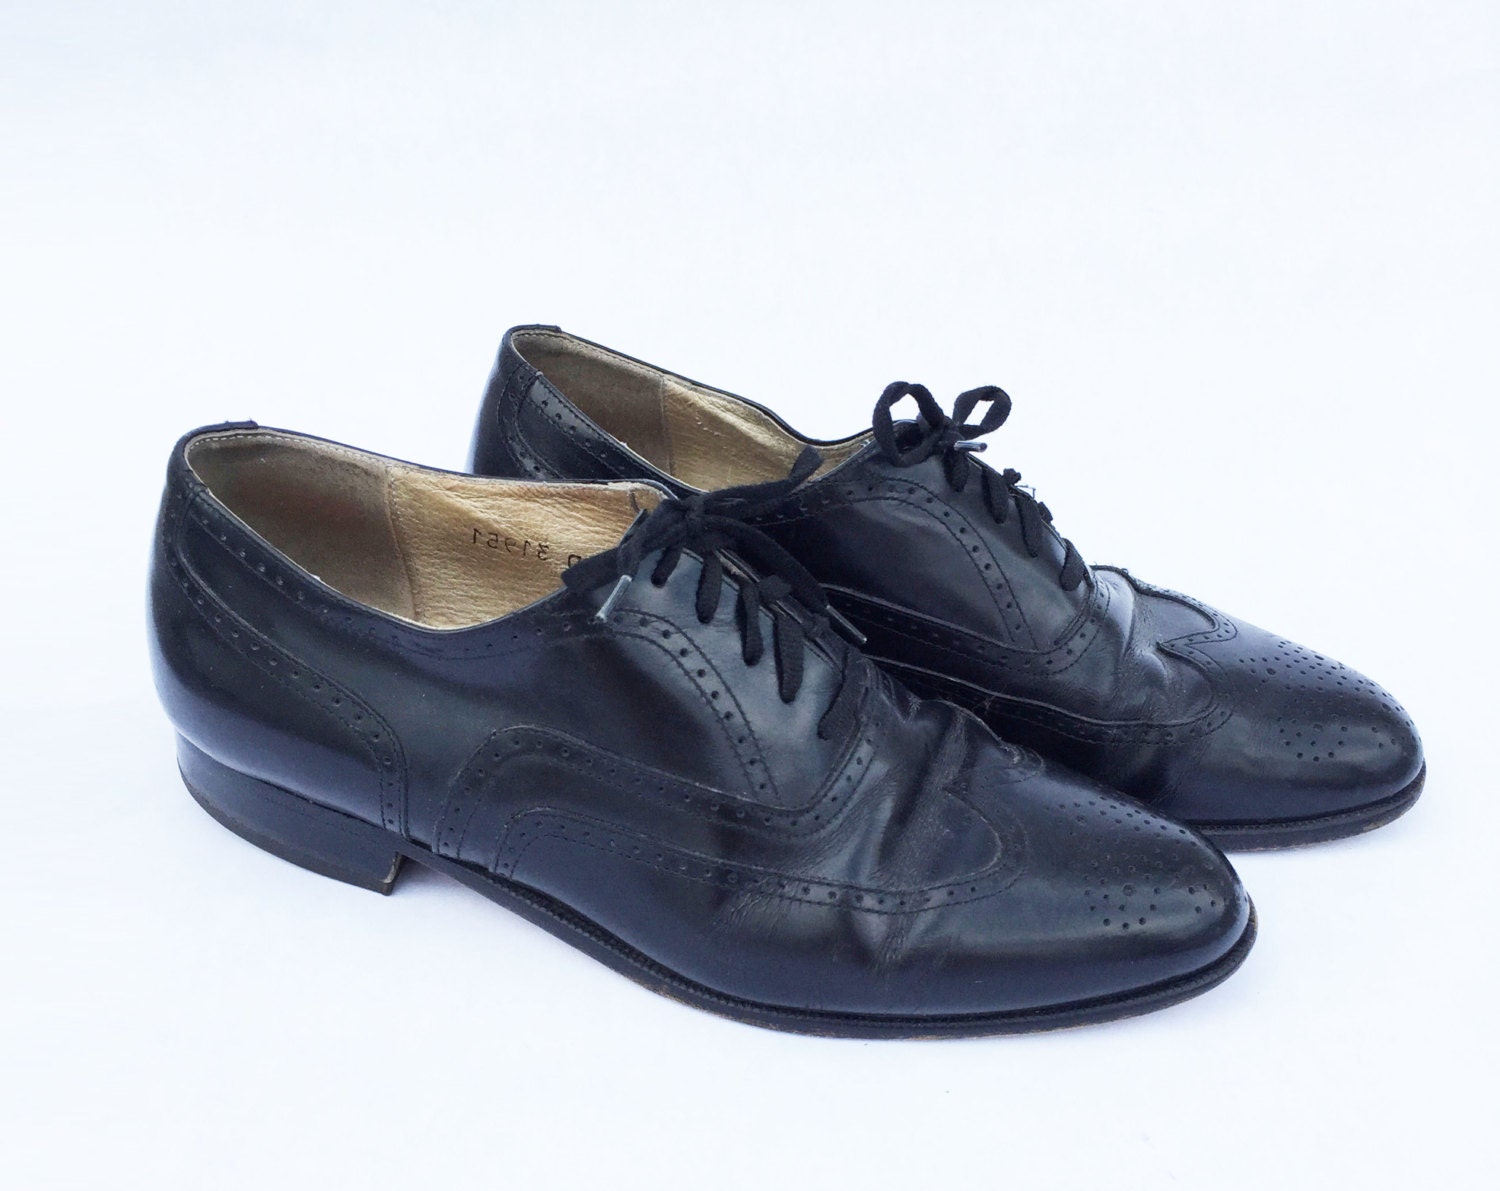 SALE 30 off 80s Shoes / 80s Wingtip Shoes Mens Black Leather